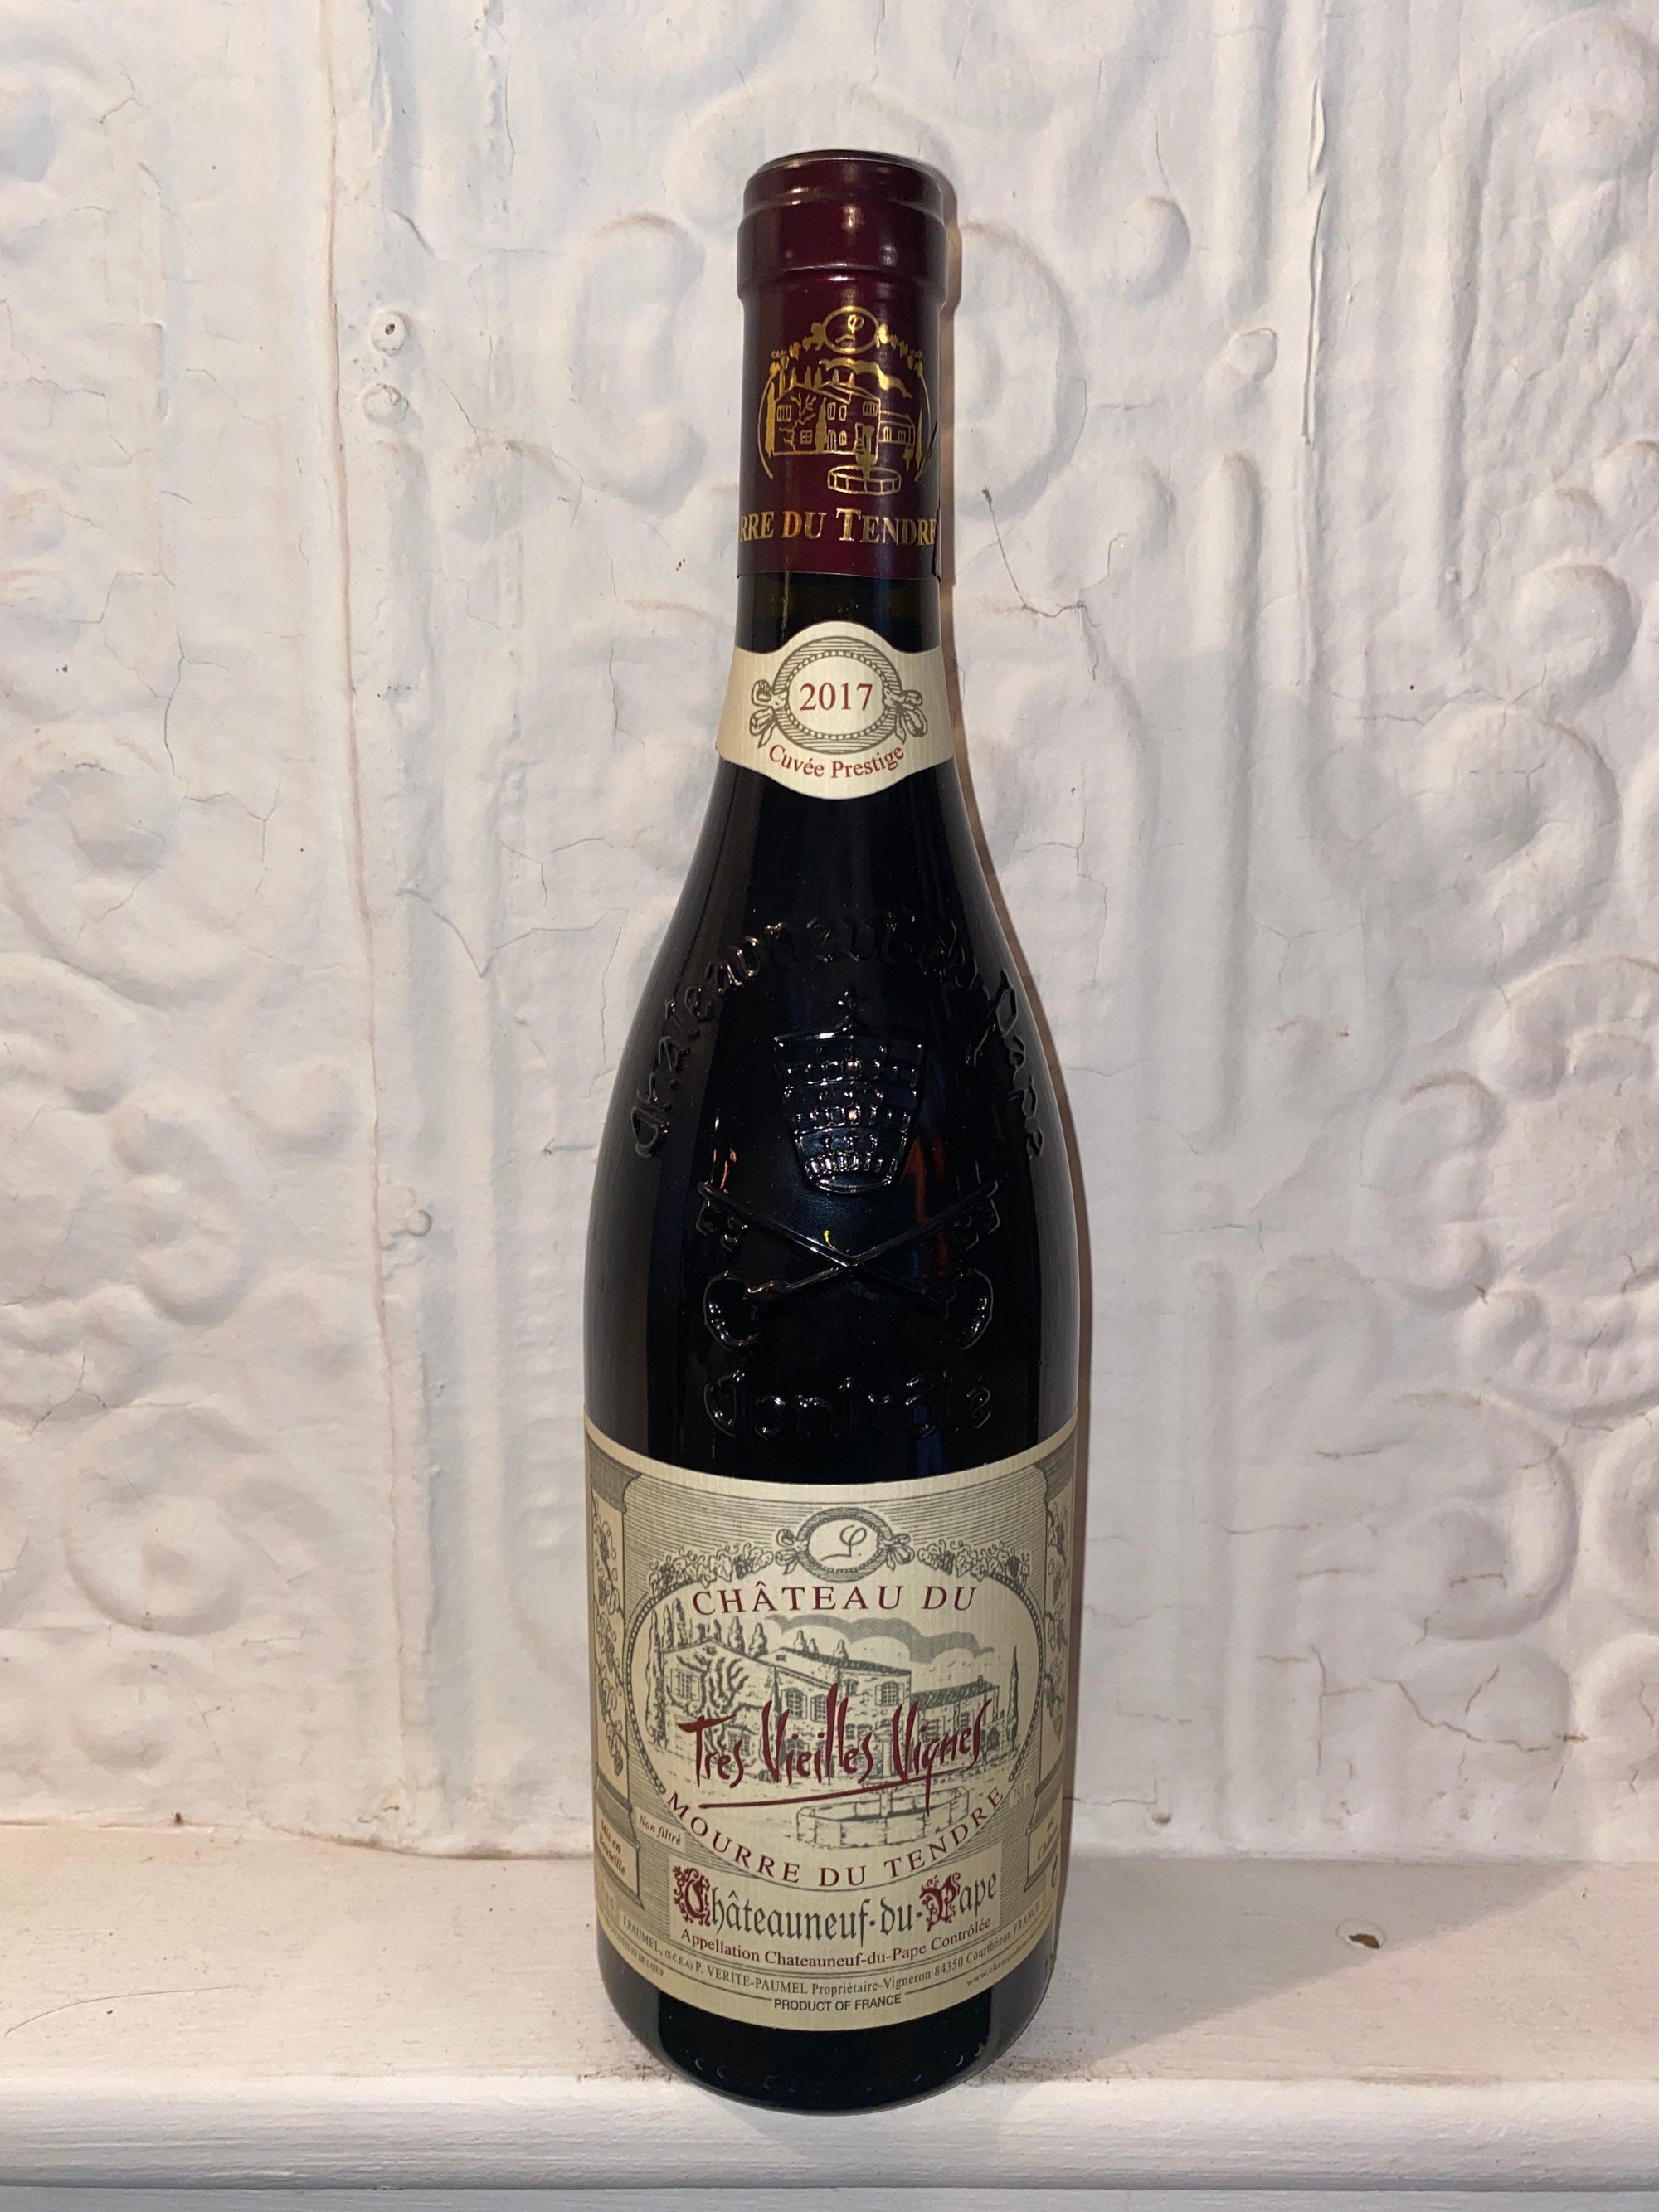 Chateauneuf du Pape Tres Vieilles Vignes, Ch. Mourre du Tendre 2017 (Rhone Valley, France)-Wine-Bibber & Bell